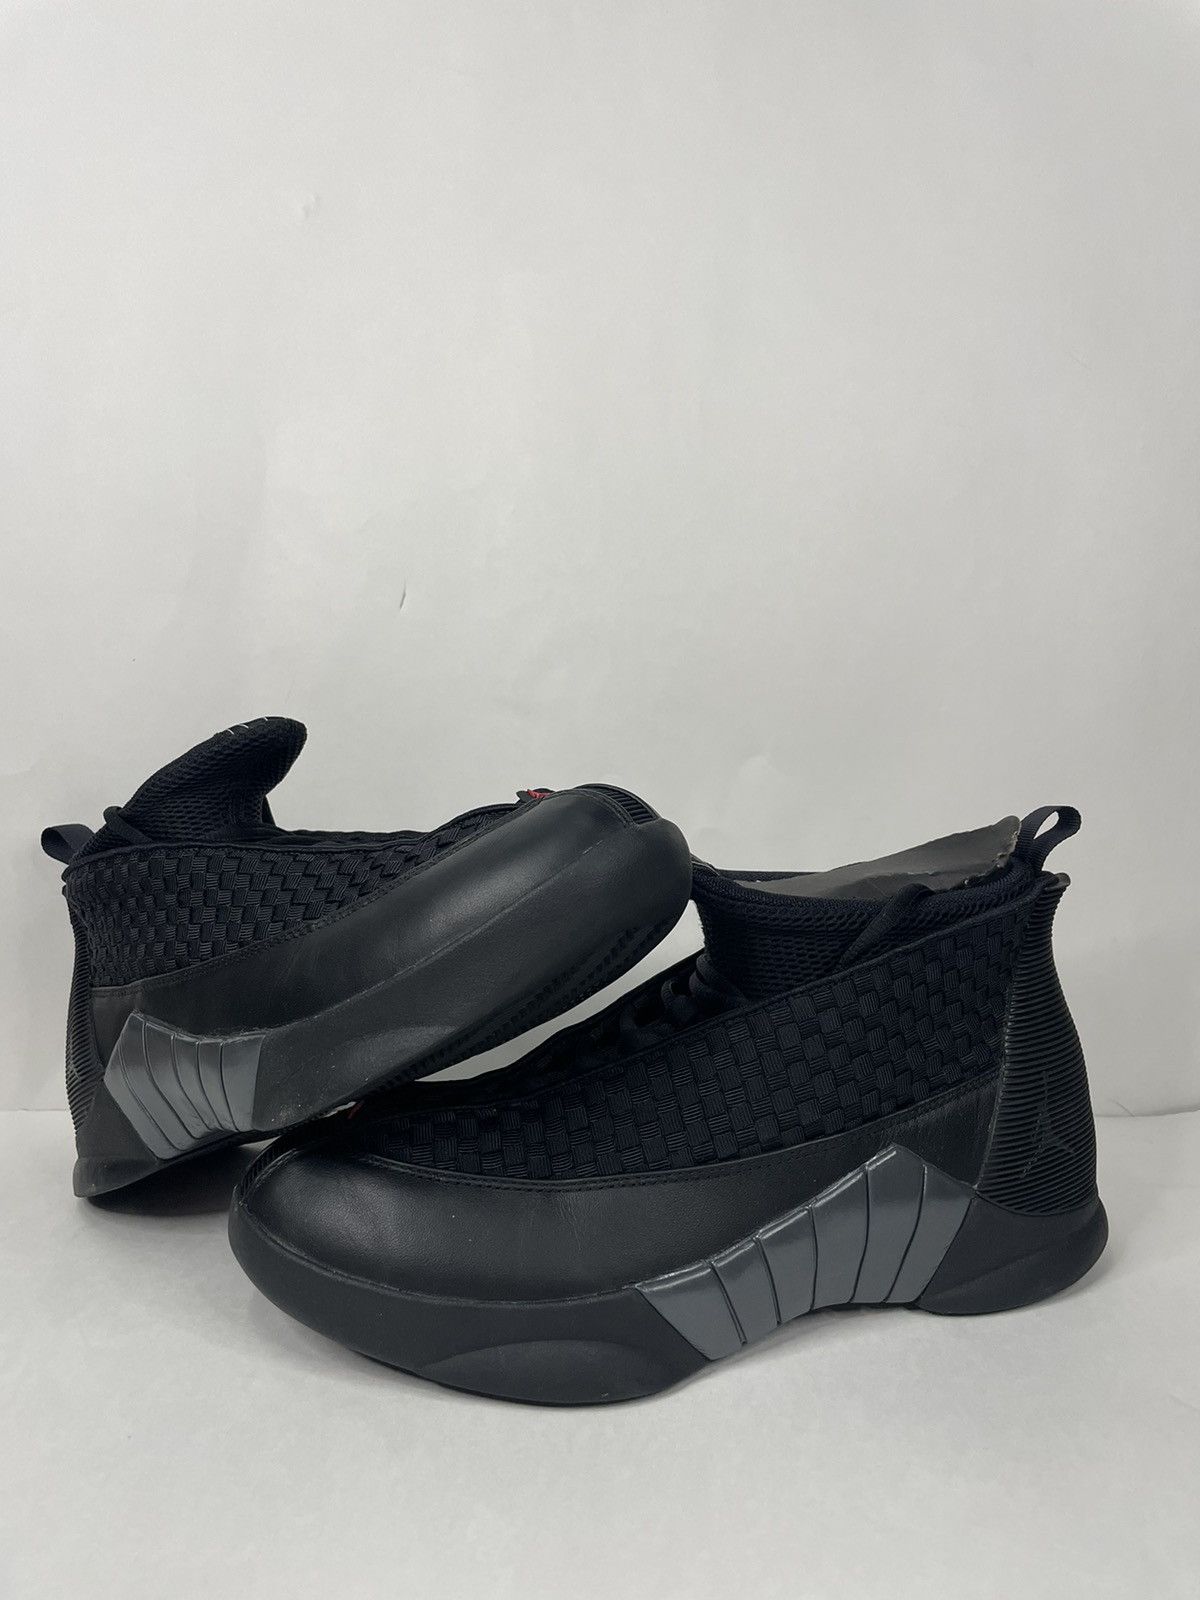 Pre-owned Jordan Brand Air Jordan 15 Retro Stealth 2017 Shoes In Black